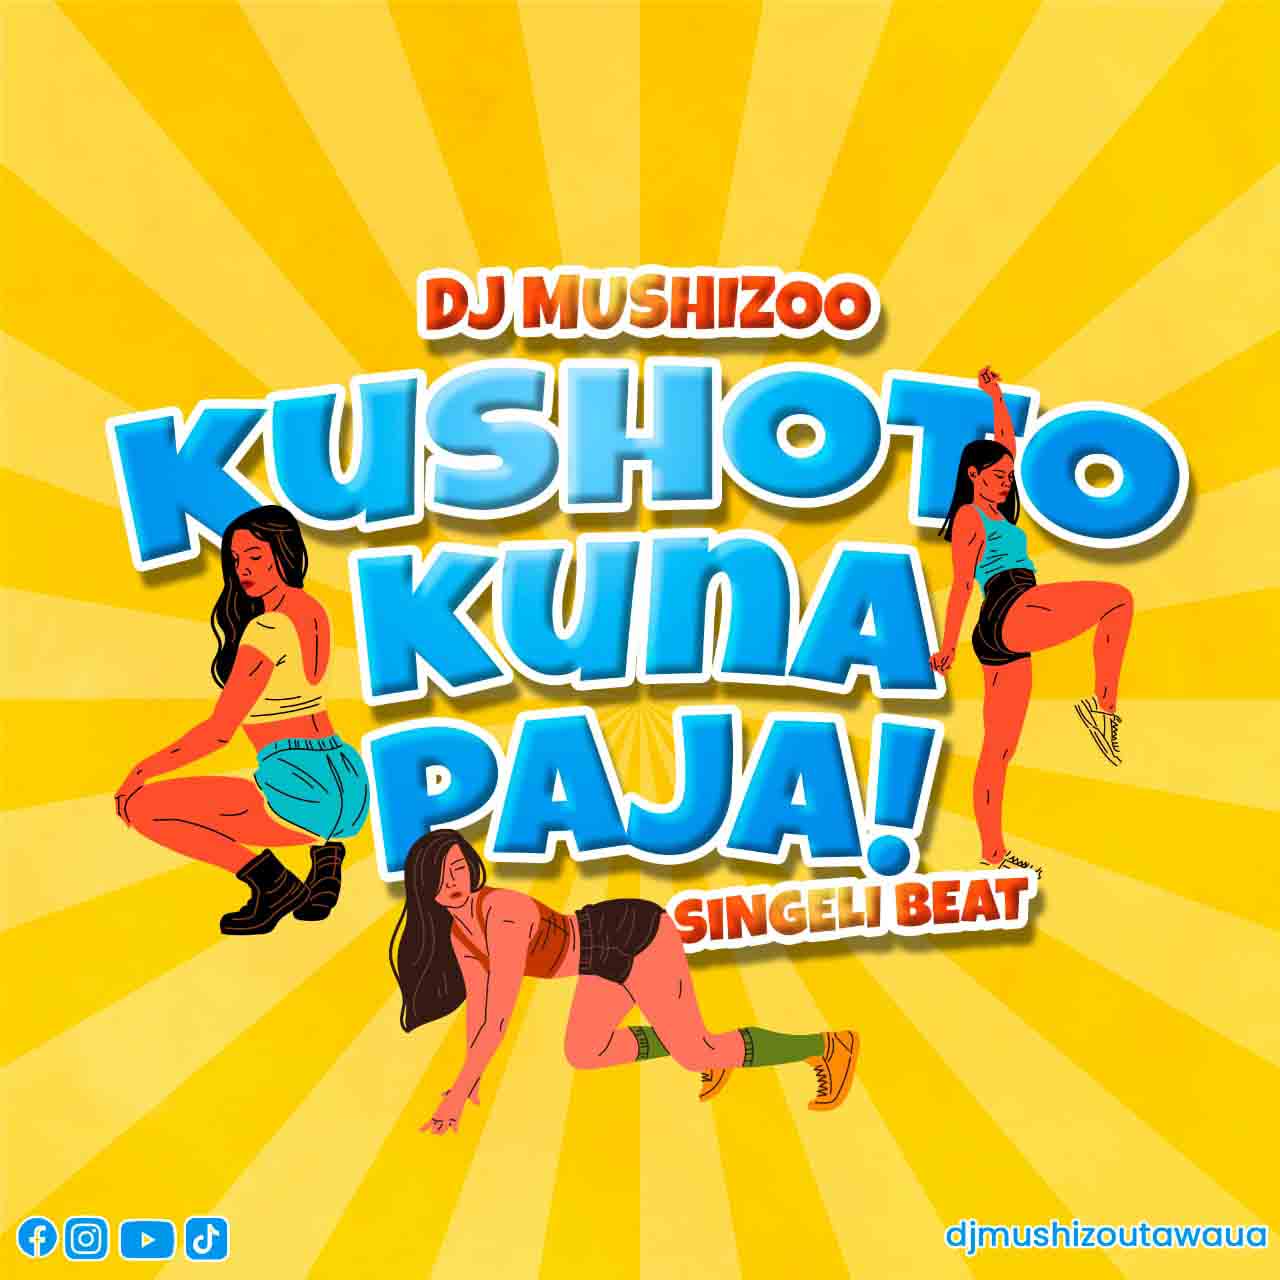 Audio Dj Mushizo Kushoto Kuna Paja Singeli Beat Download Ikmzikicom 